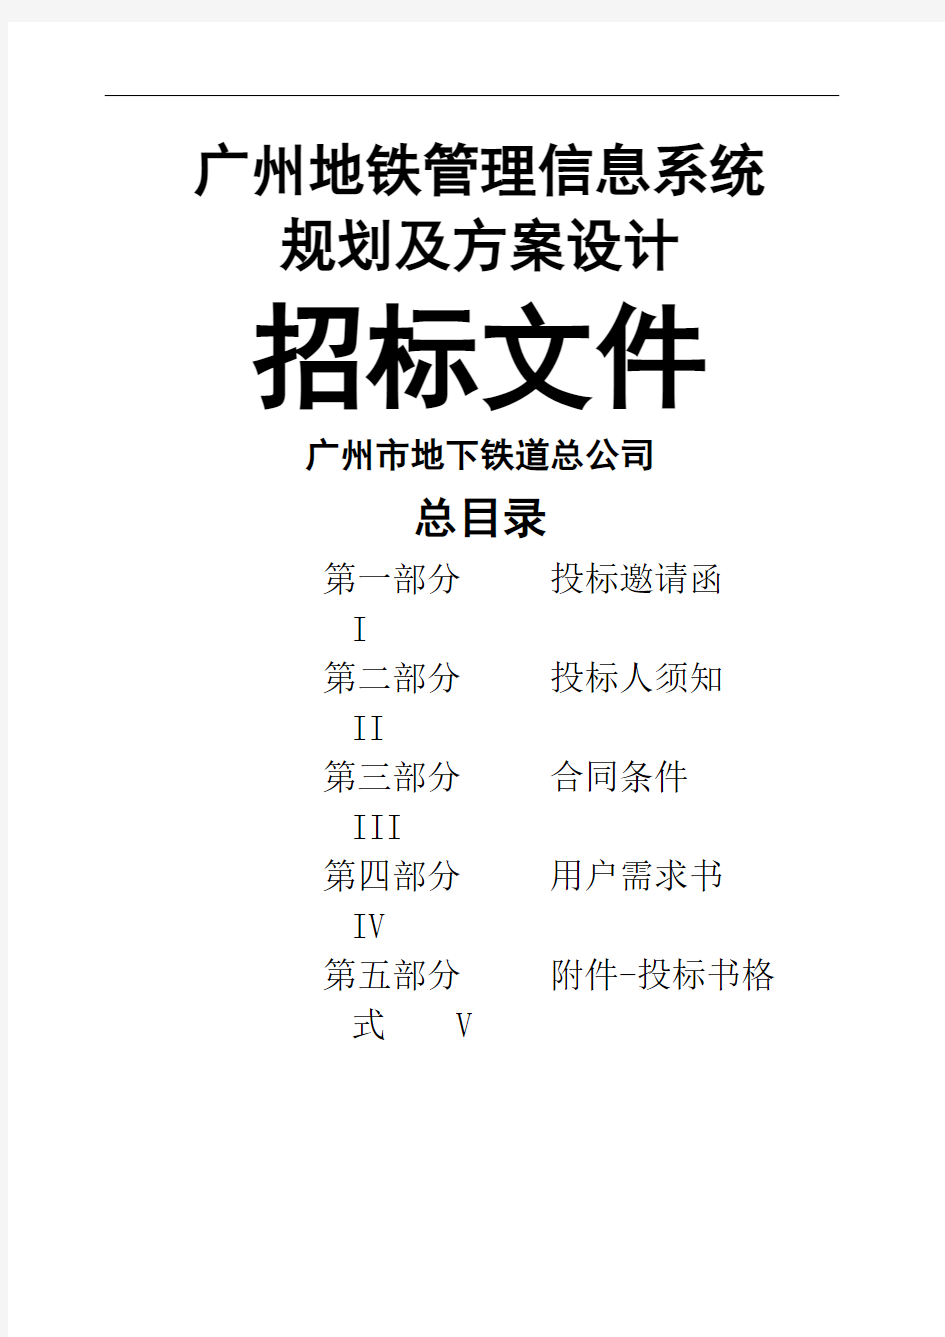 广州地铁管理信息系统规划及方案设计招标文件